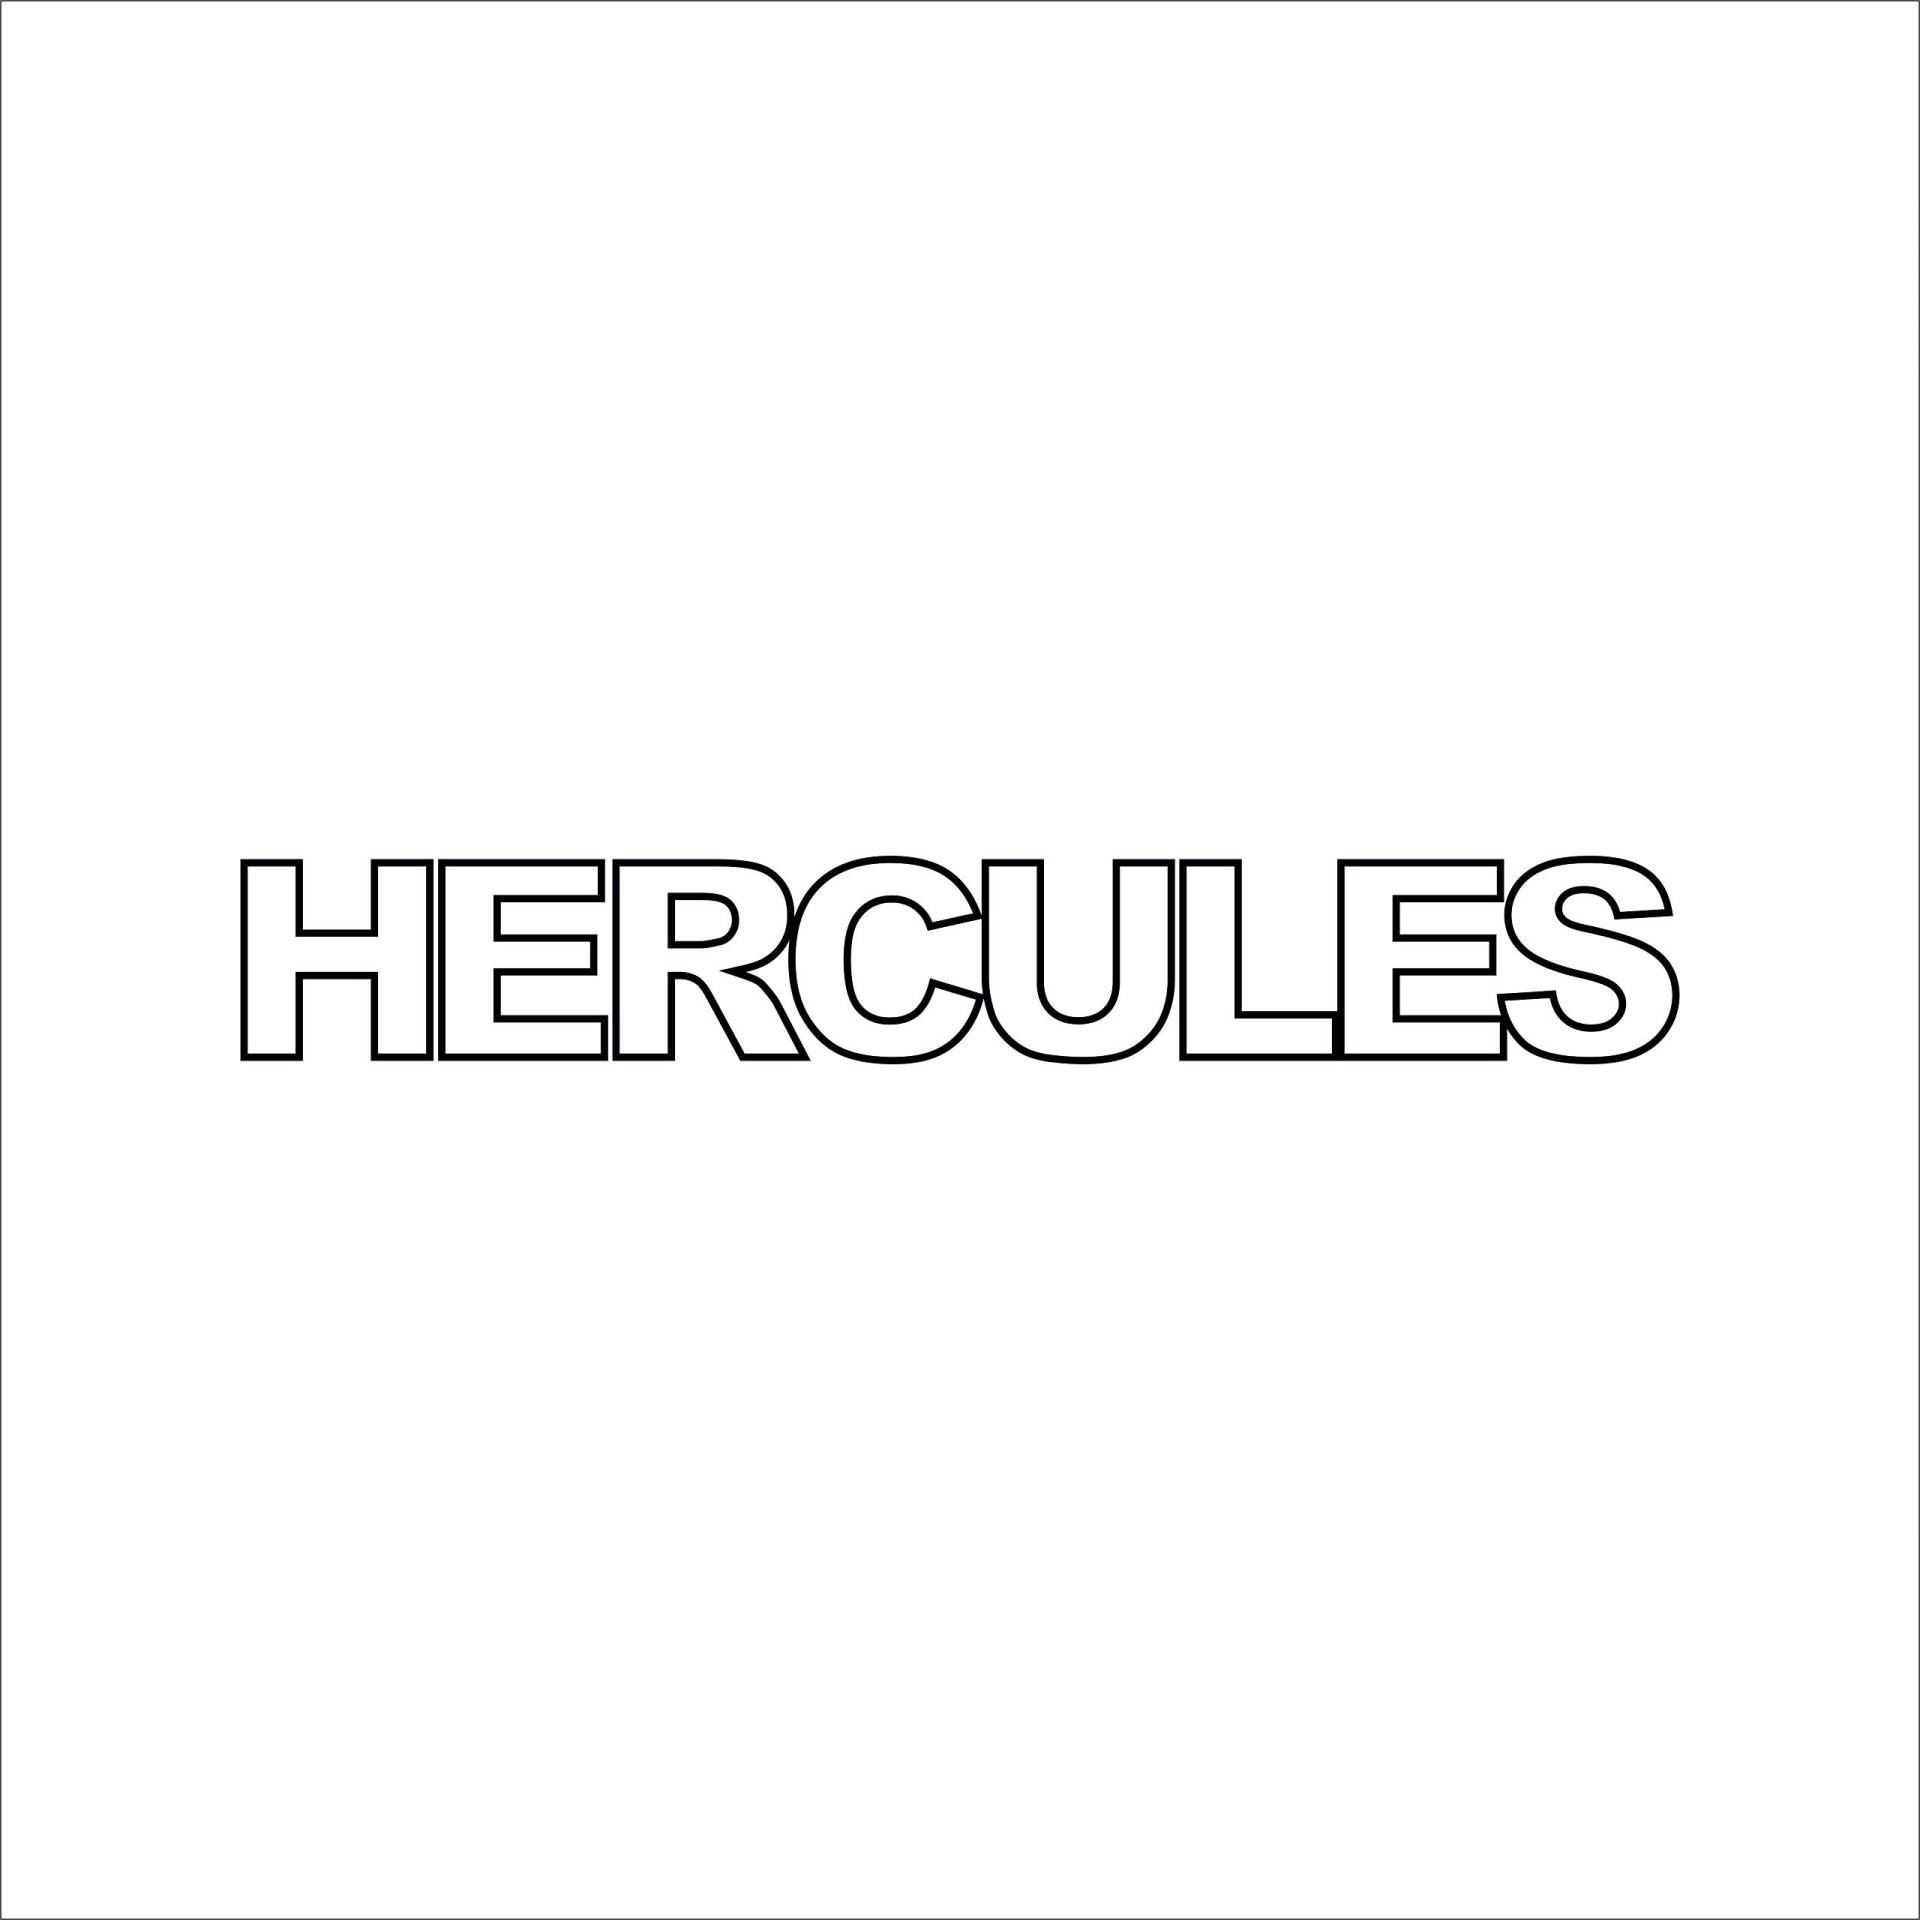 SUPERSTICKI 2X Hercules ca 20cm Motorrad Aufkleber Bike Auto Racing Tuning aus Hochleistungsfolie Aufkleber Autoaufkleber Tuningaufkleber Hochleistungsfolie für alle glatten Flächen UV und von SUPERSTICKI